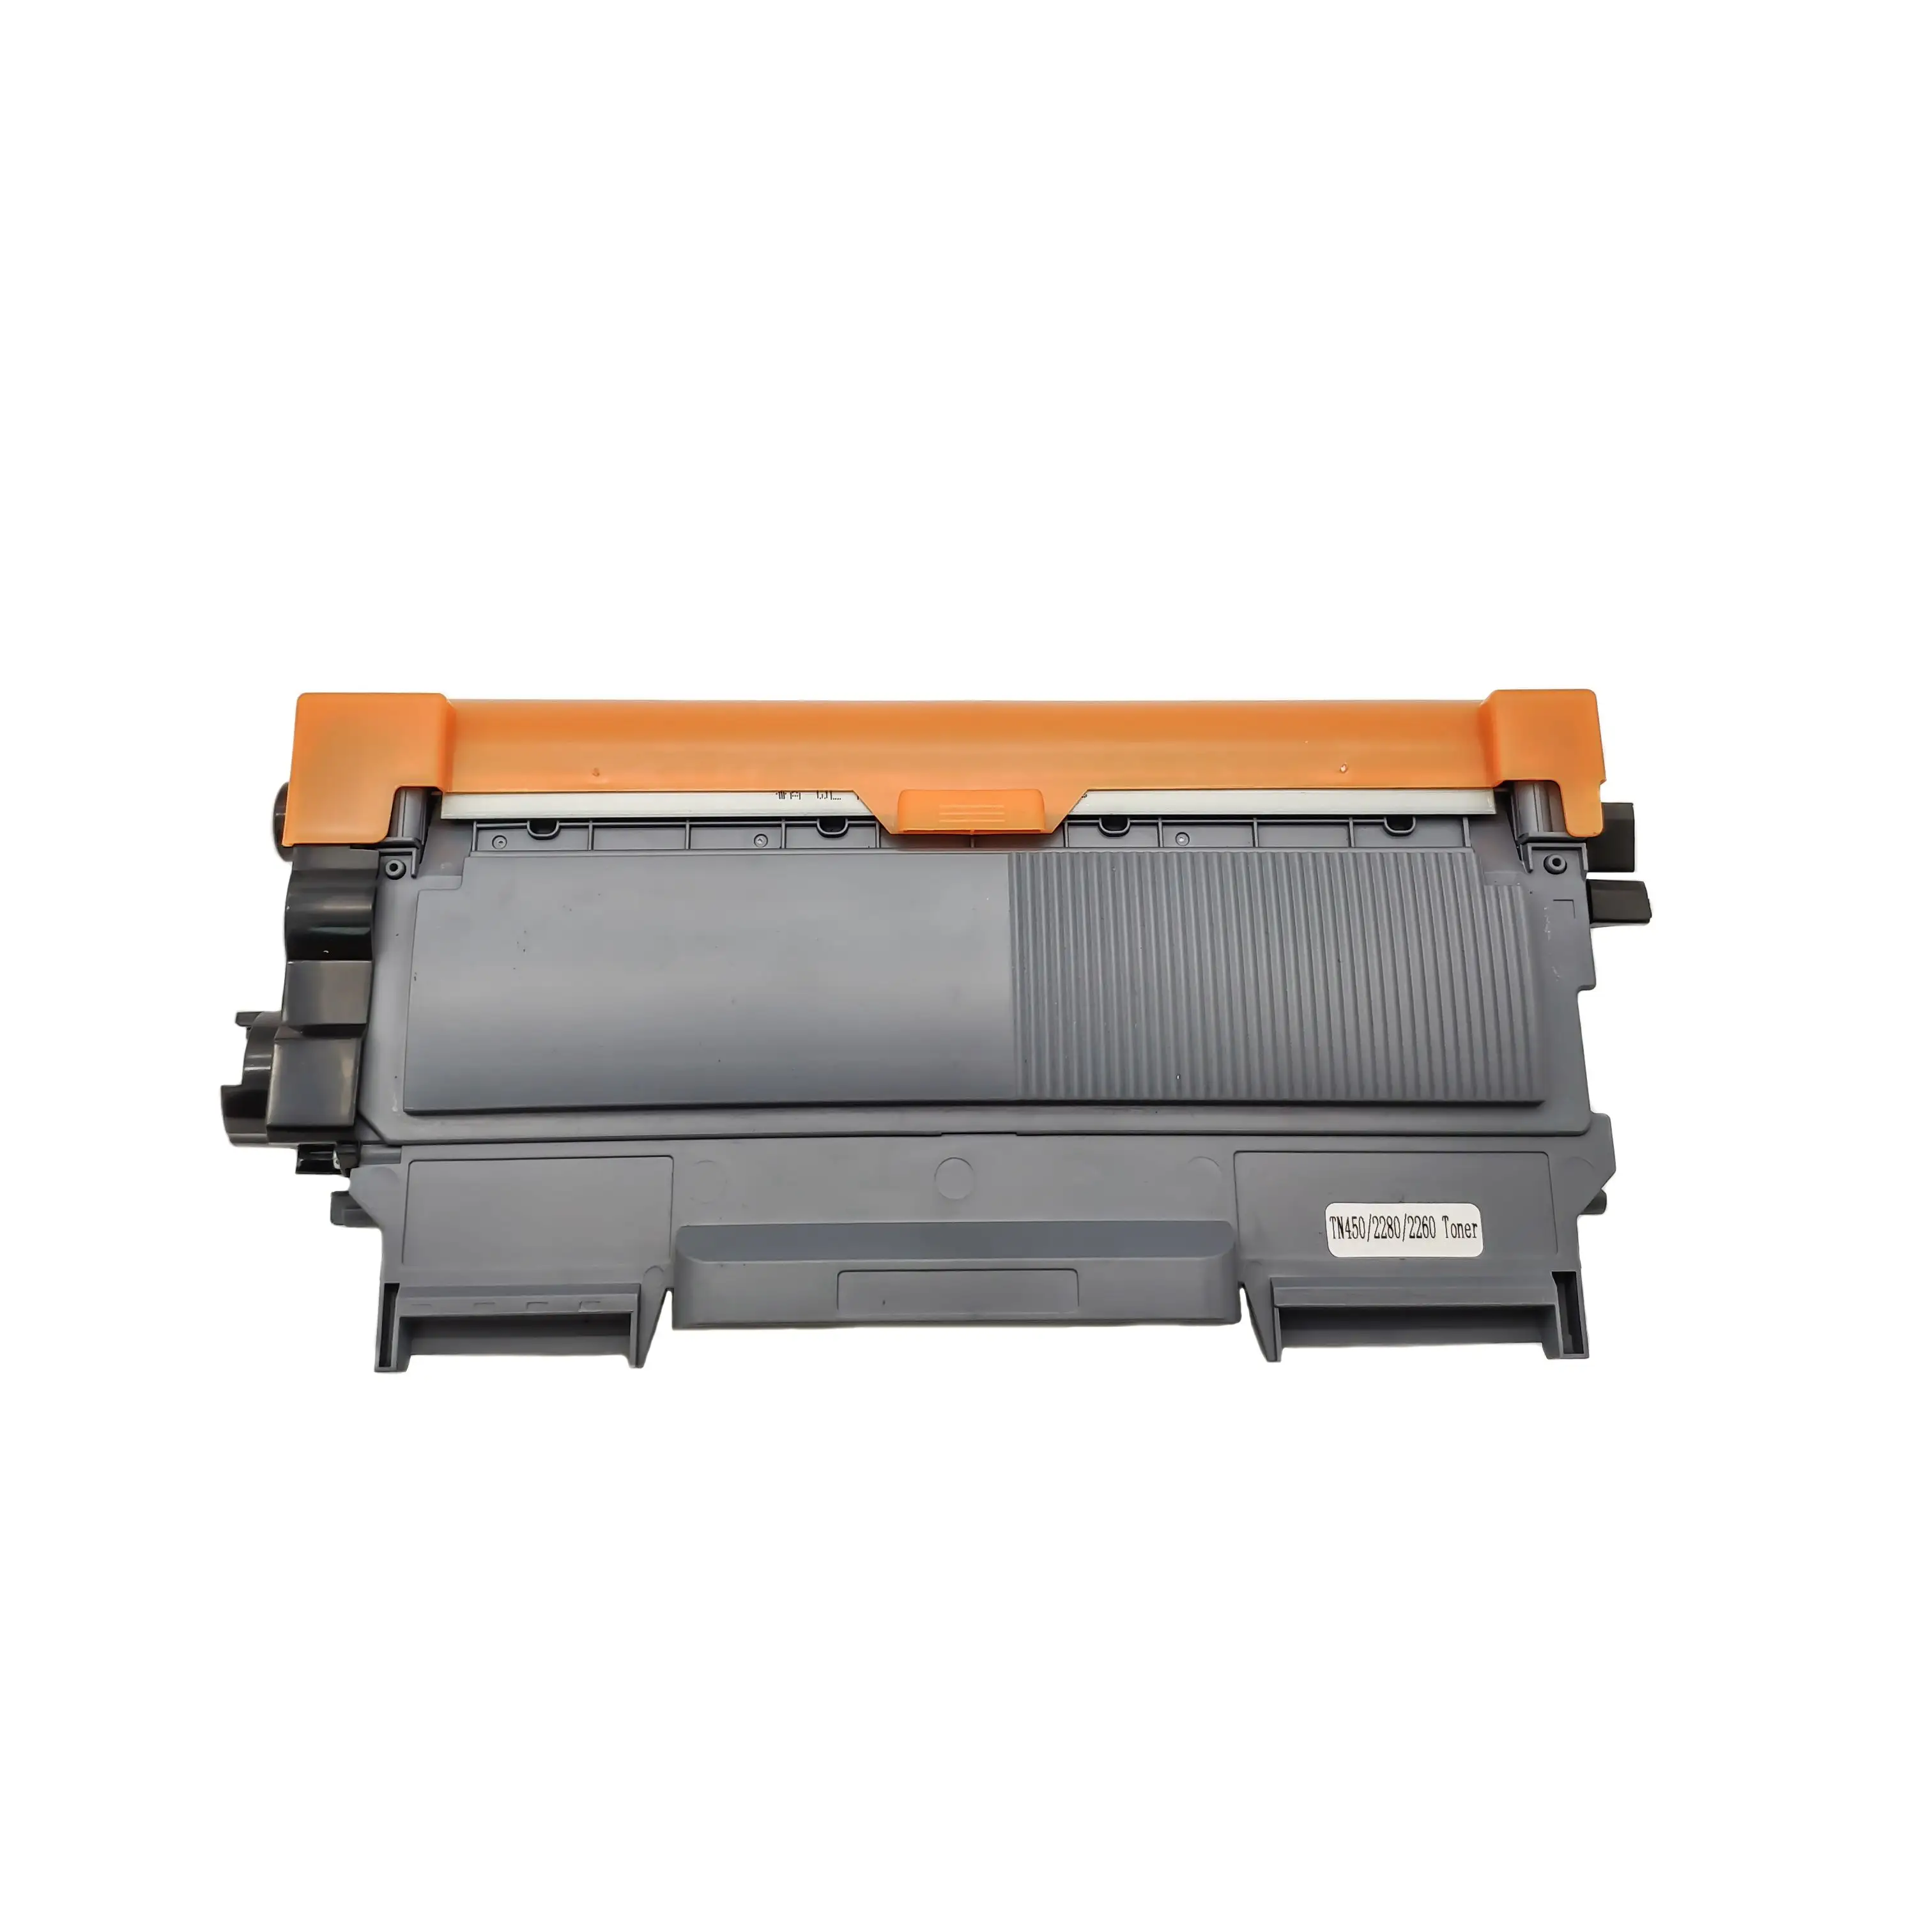 39x15x20Cm Tn450 cartouche de Toner Laser complète pour imprimantes, prix d'usine bon marché